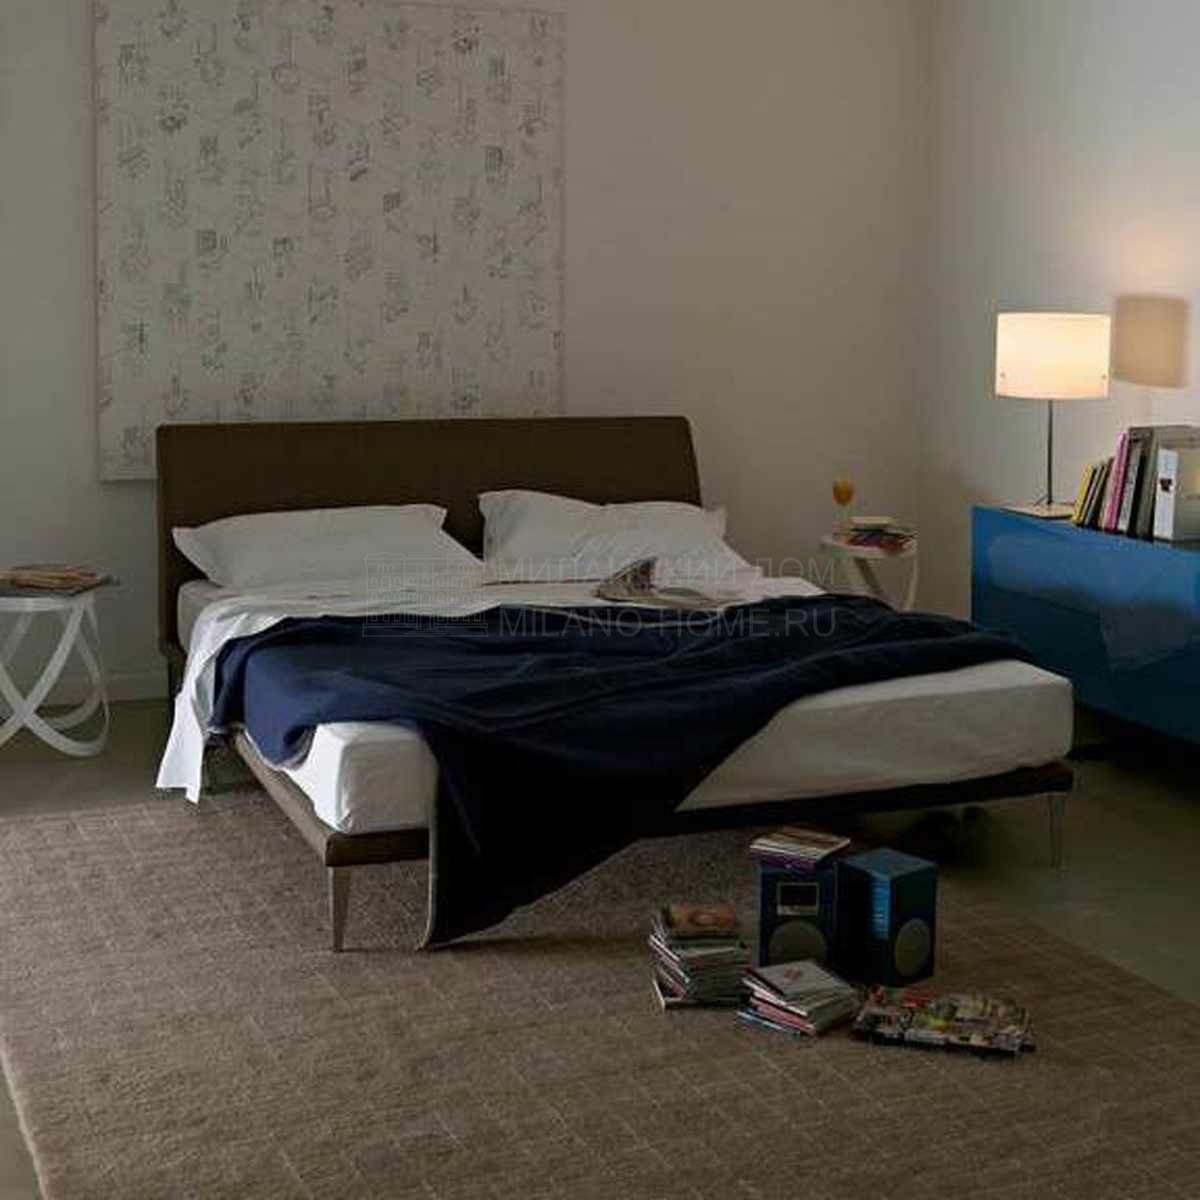 Кровать с мягким изголовьем Bed cappellini из Италии фабрики CAPPELLINI